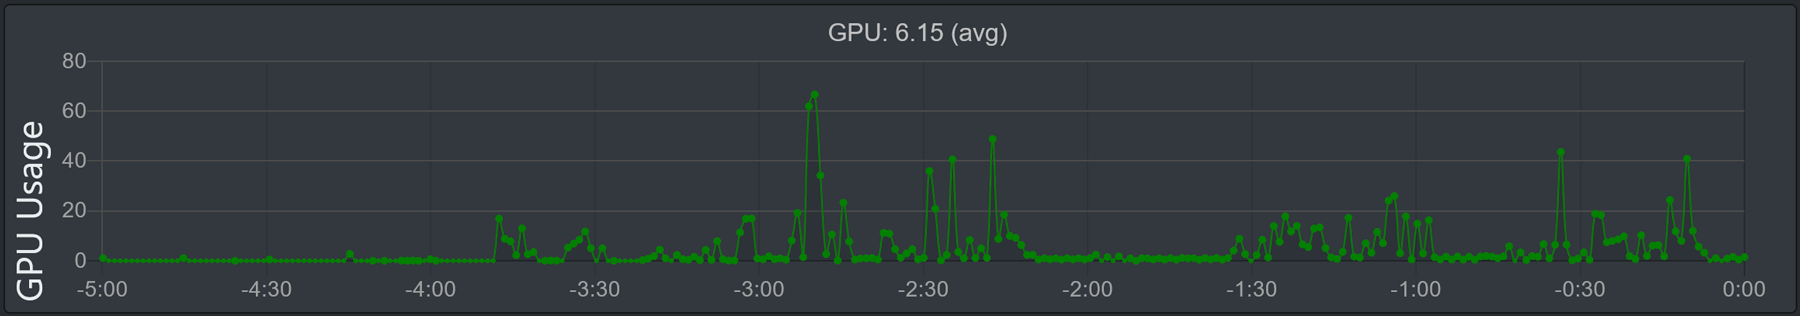 'GPU 사용량' 그래프 이미지